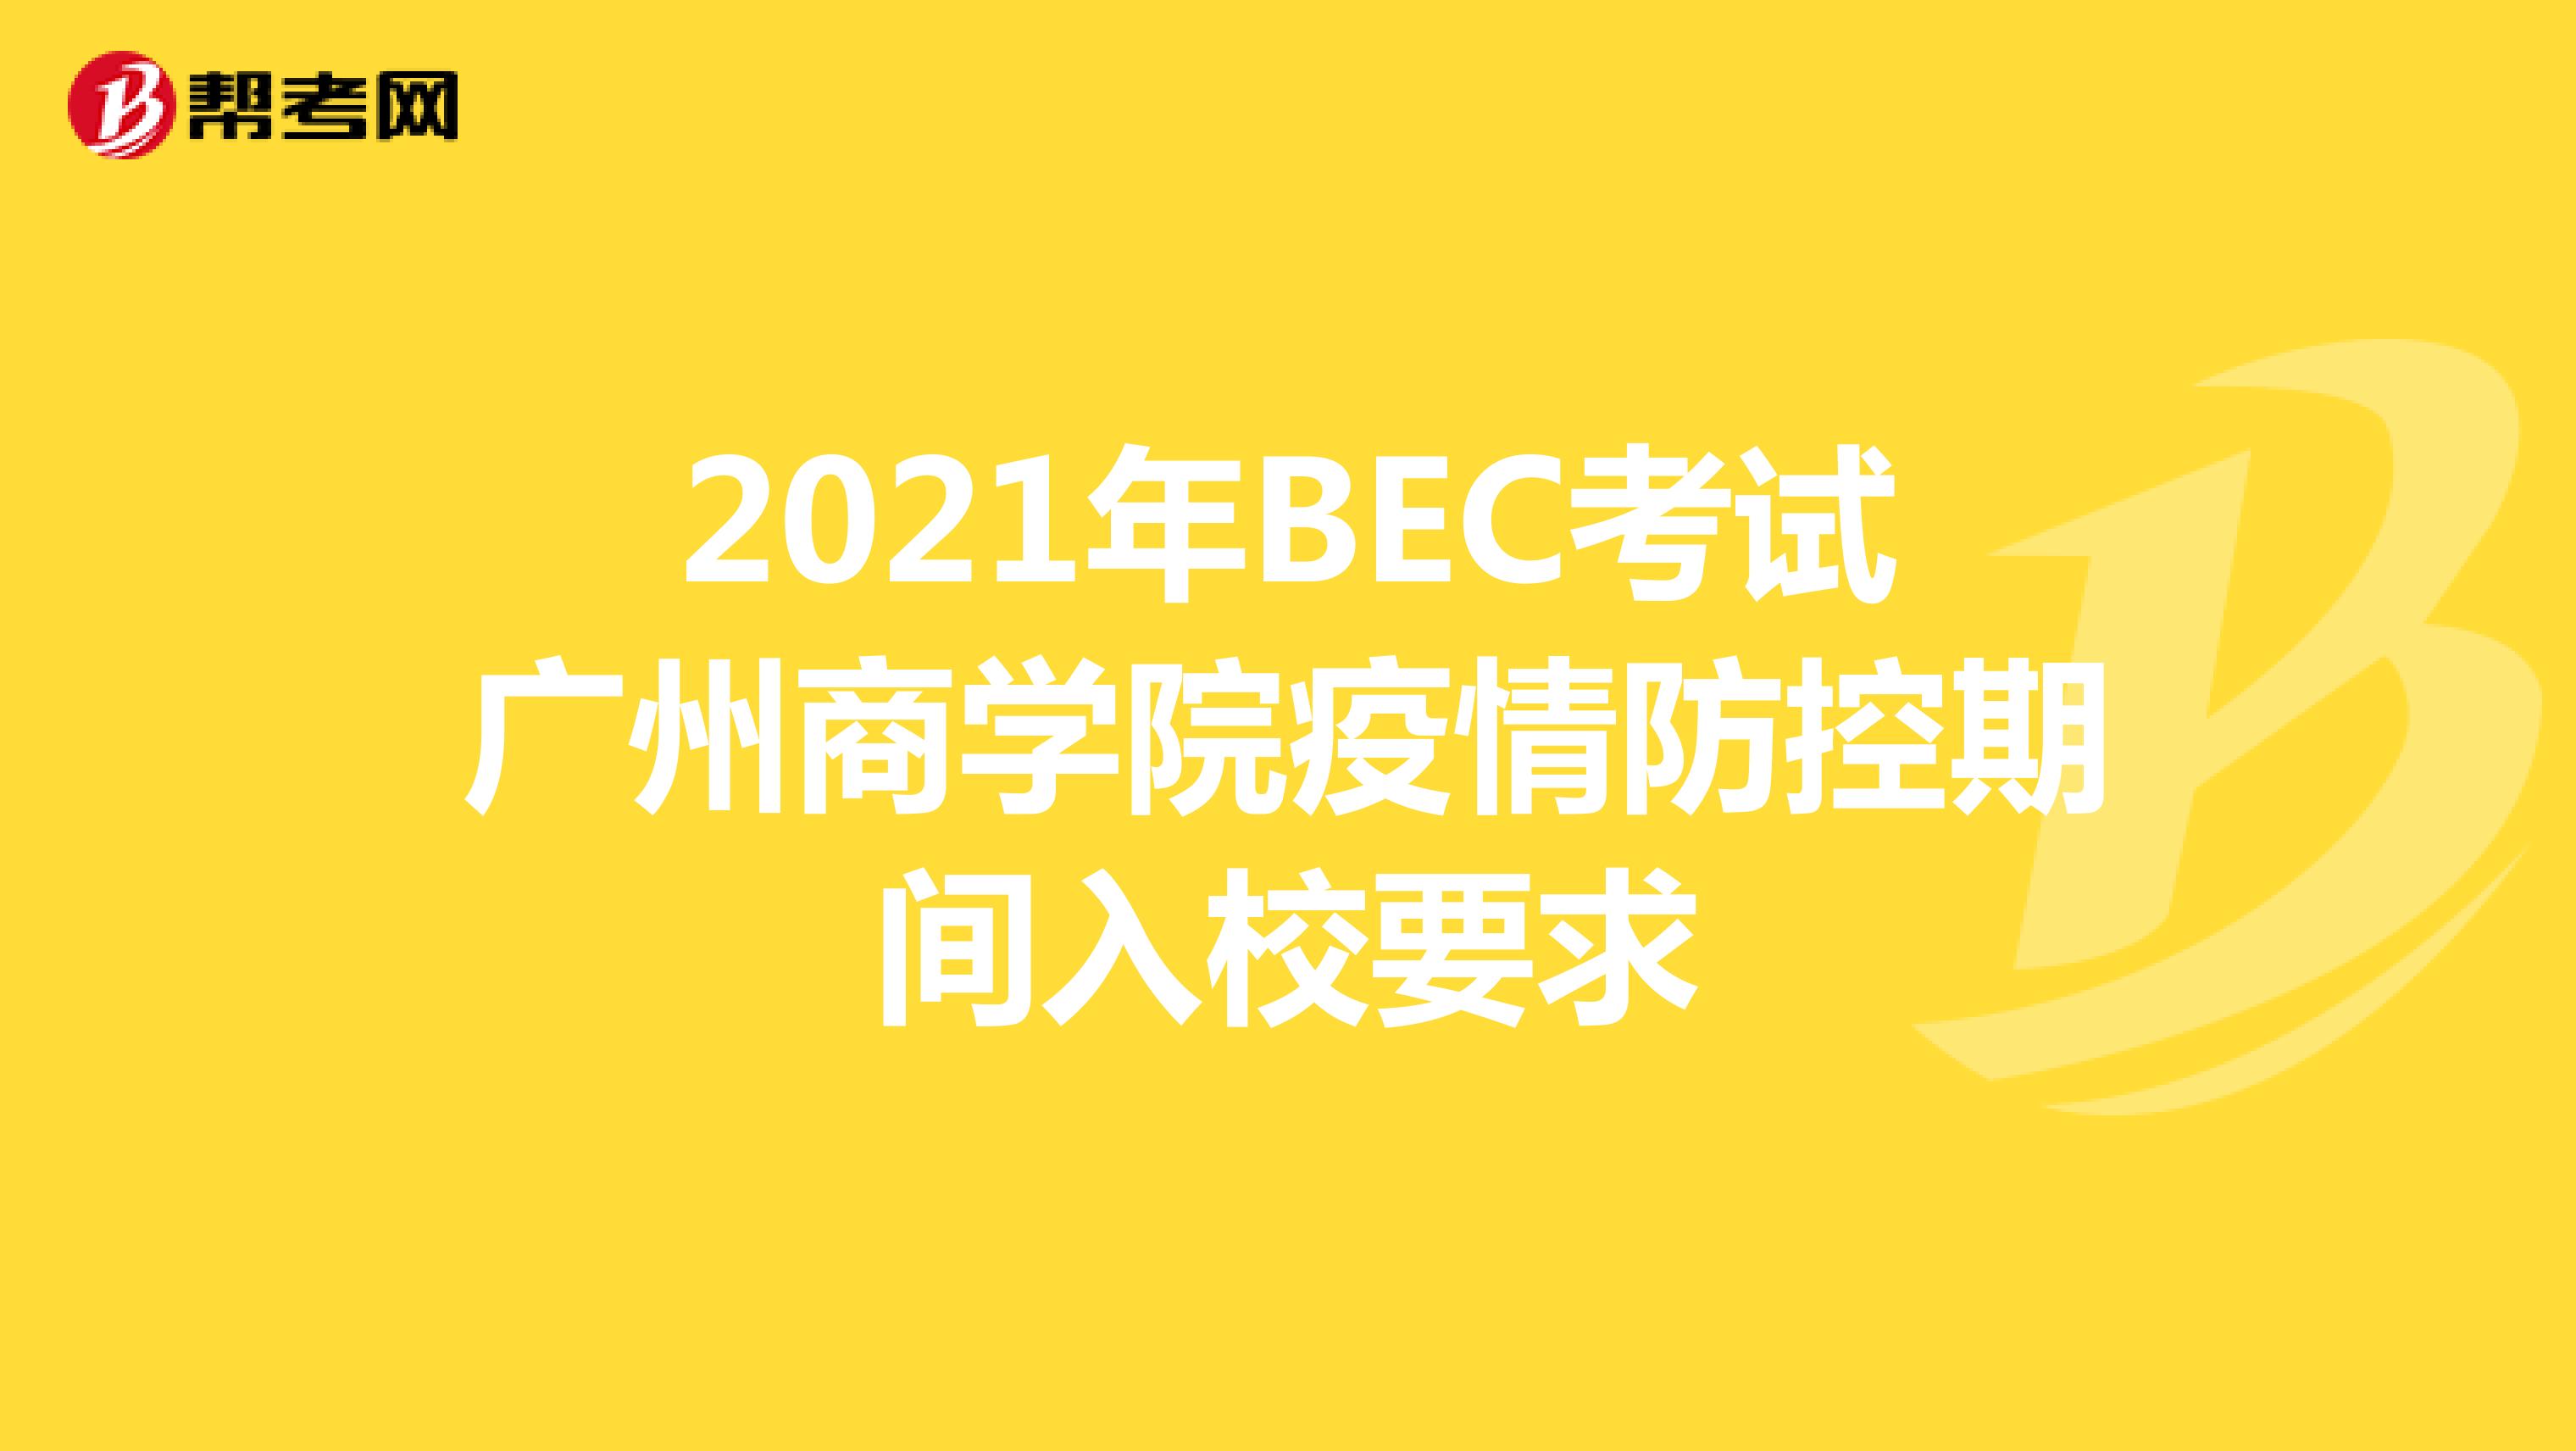 2021年BEC考试广州商学院疫情防控期间入校要求